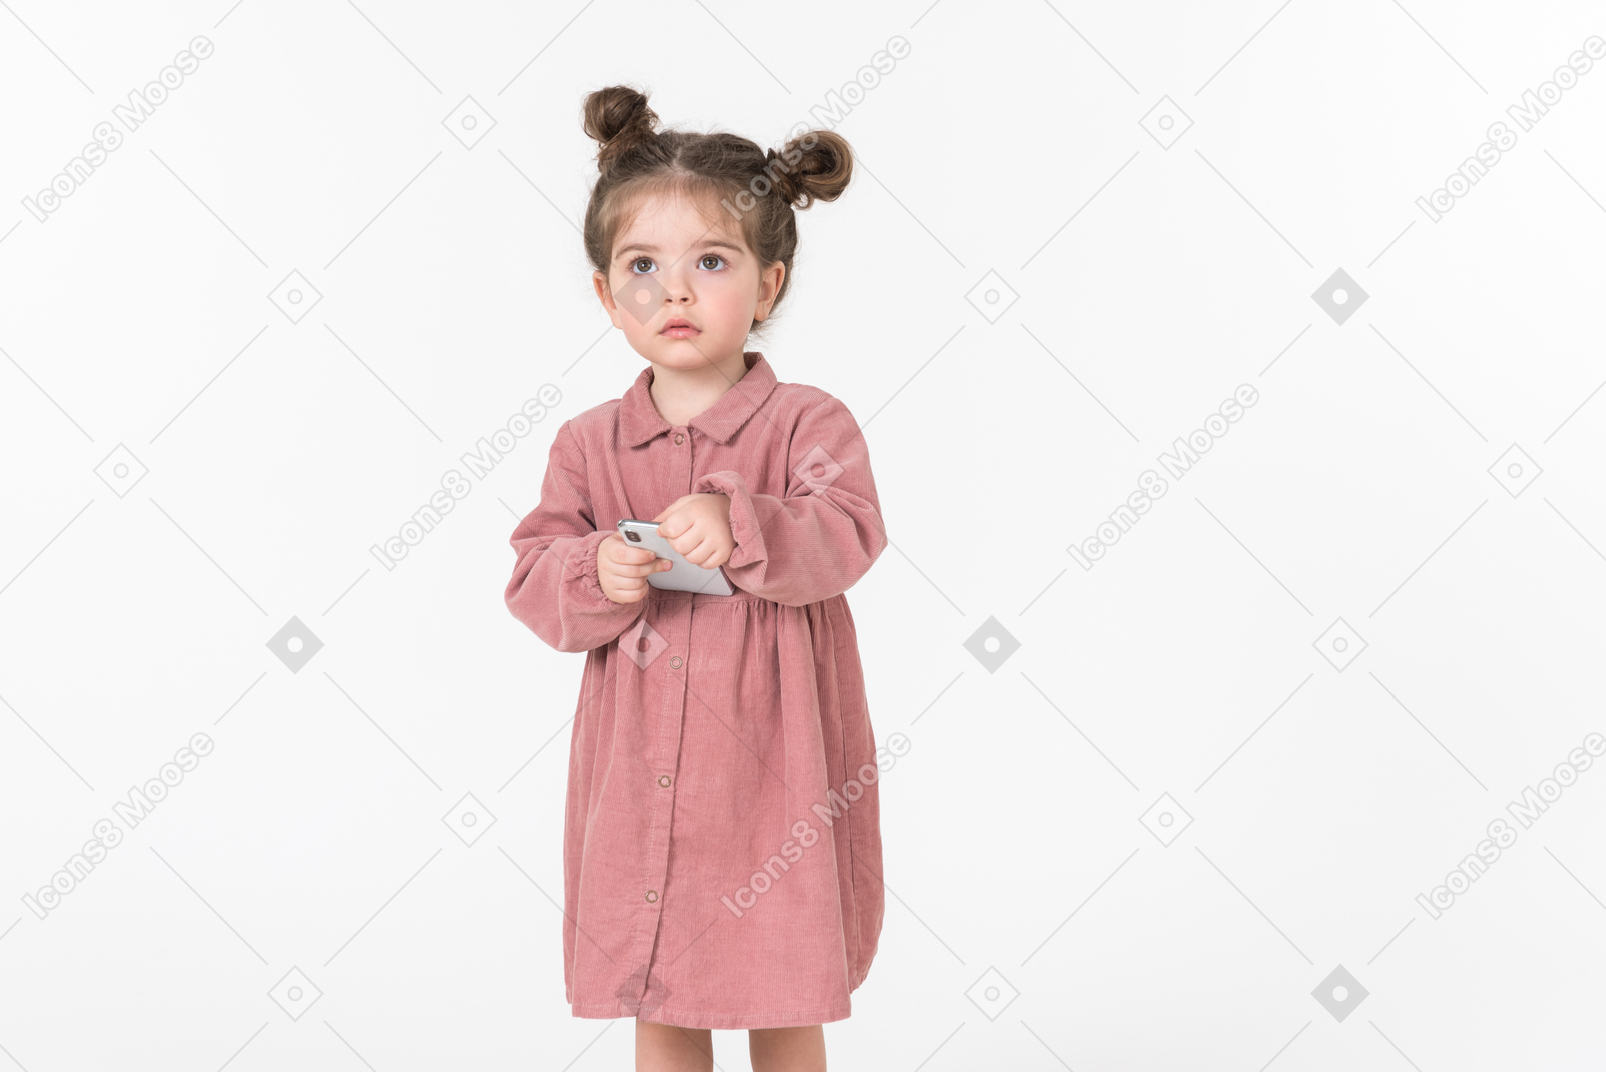 Little kid girl holding smartphone